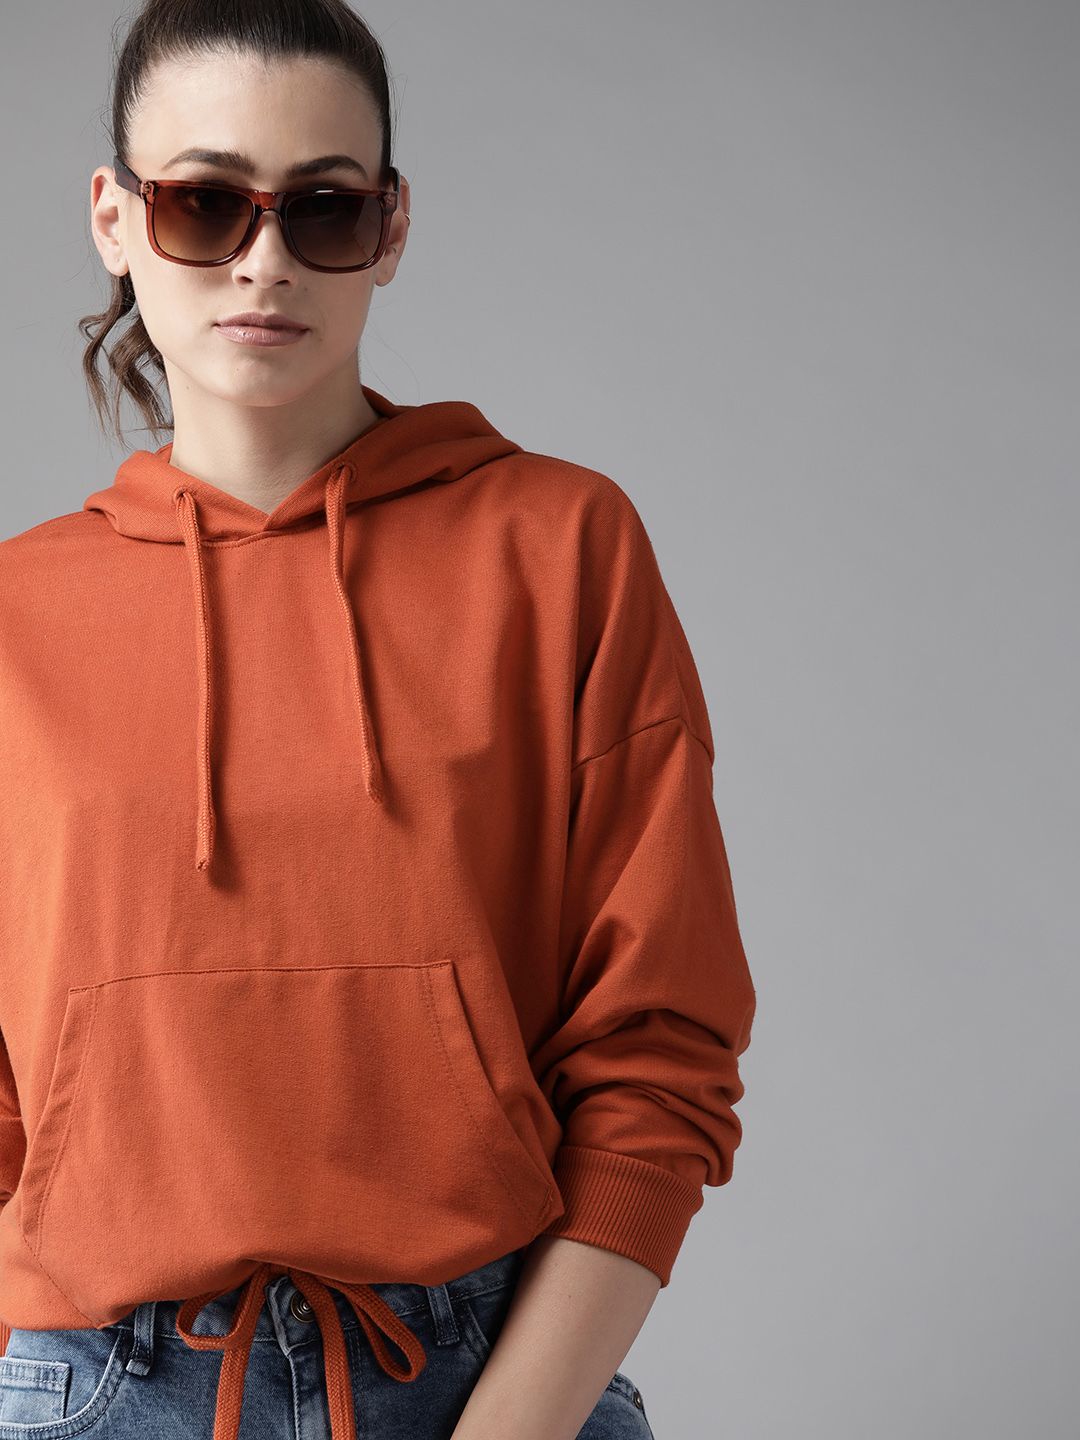 Roadster Women Rust Orange Solid Hooded Sweatshirt Price in India